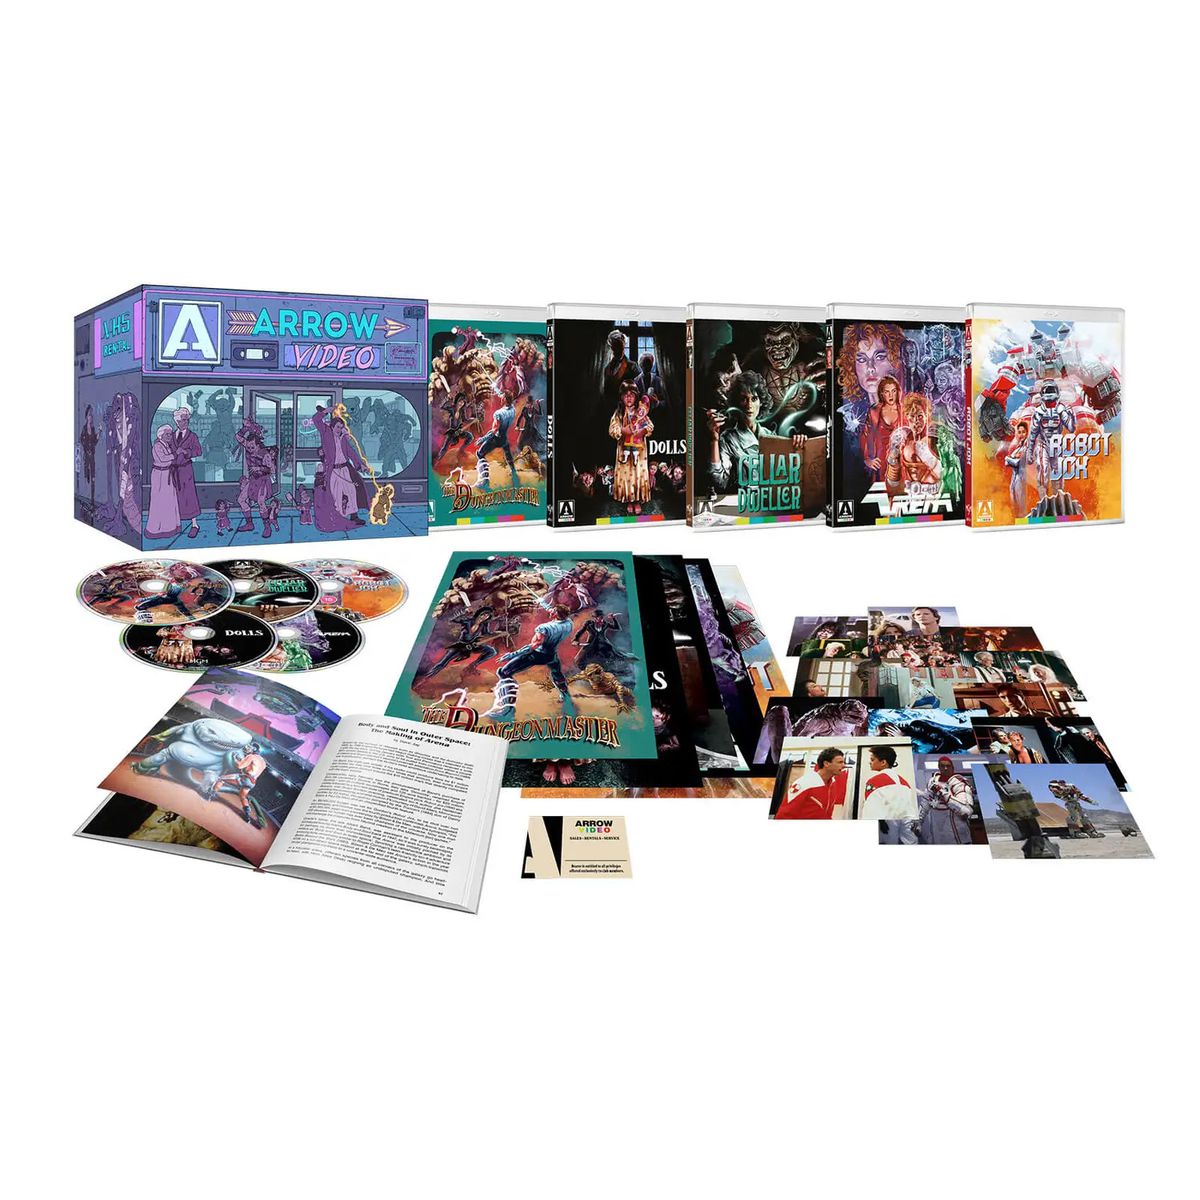 Een foto van de Enter the Video Store Blu-ray-boxset, inclusief een aantal Blu-ray-schijven, foto's en een boek.